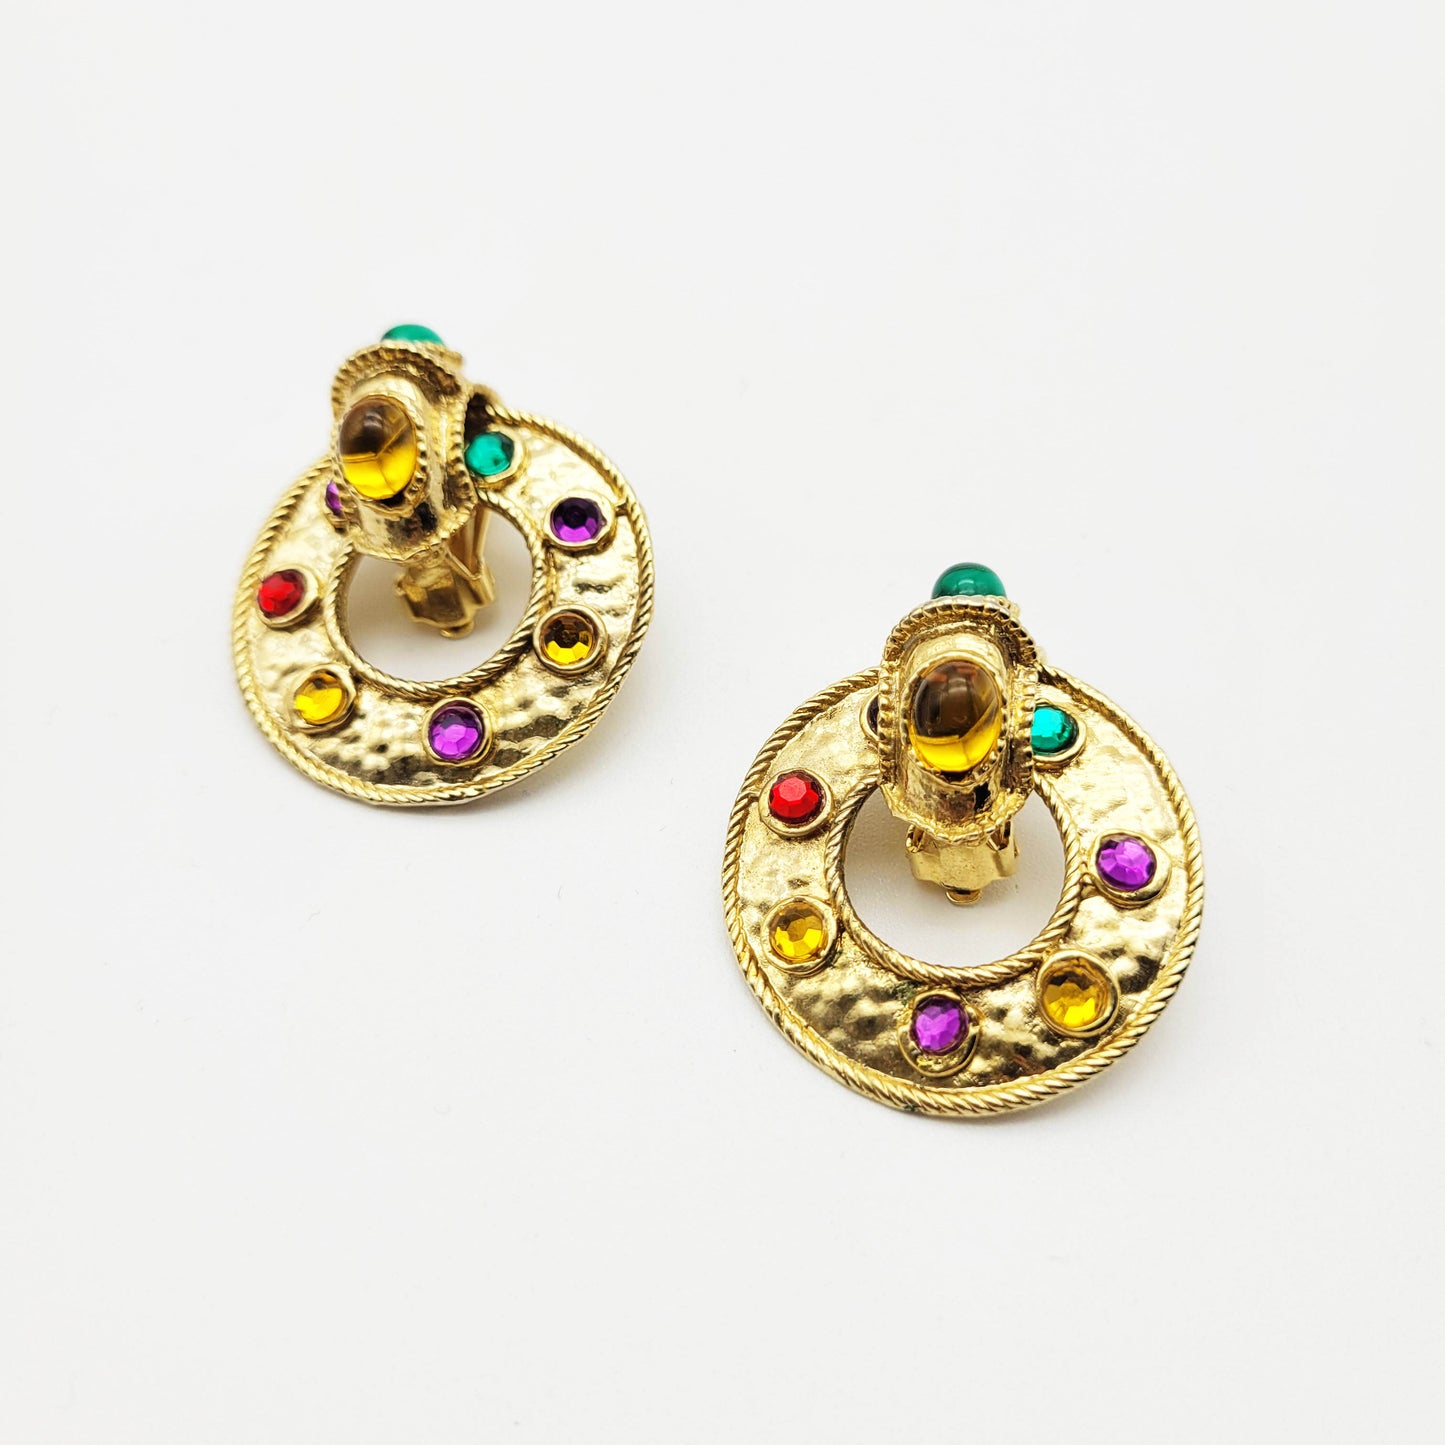 Vintage colorful earrings